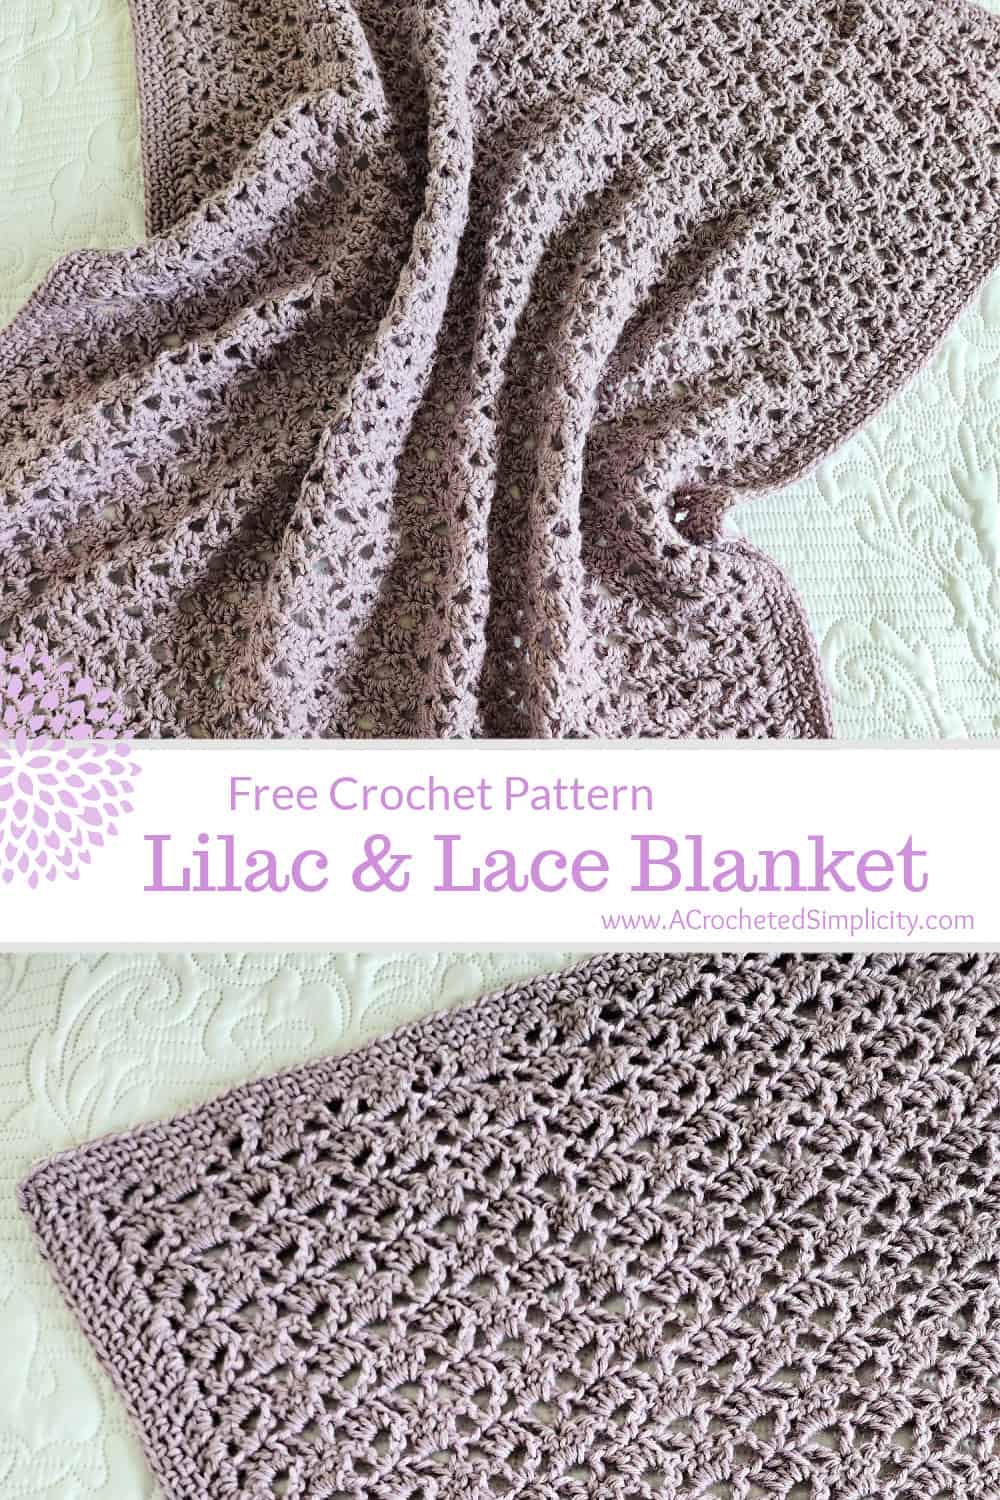 Dusty purple crochet lace blanket laying on a white bedspread.